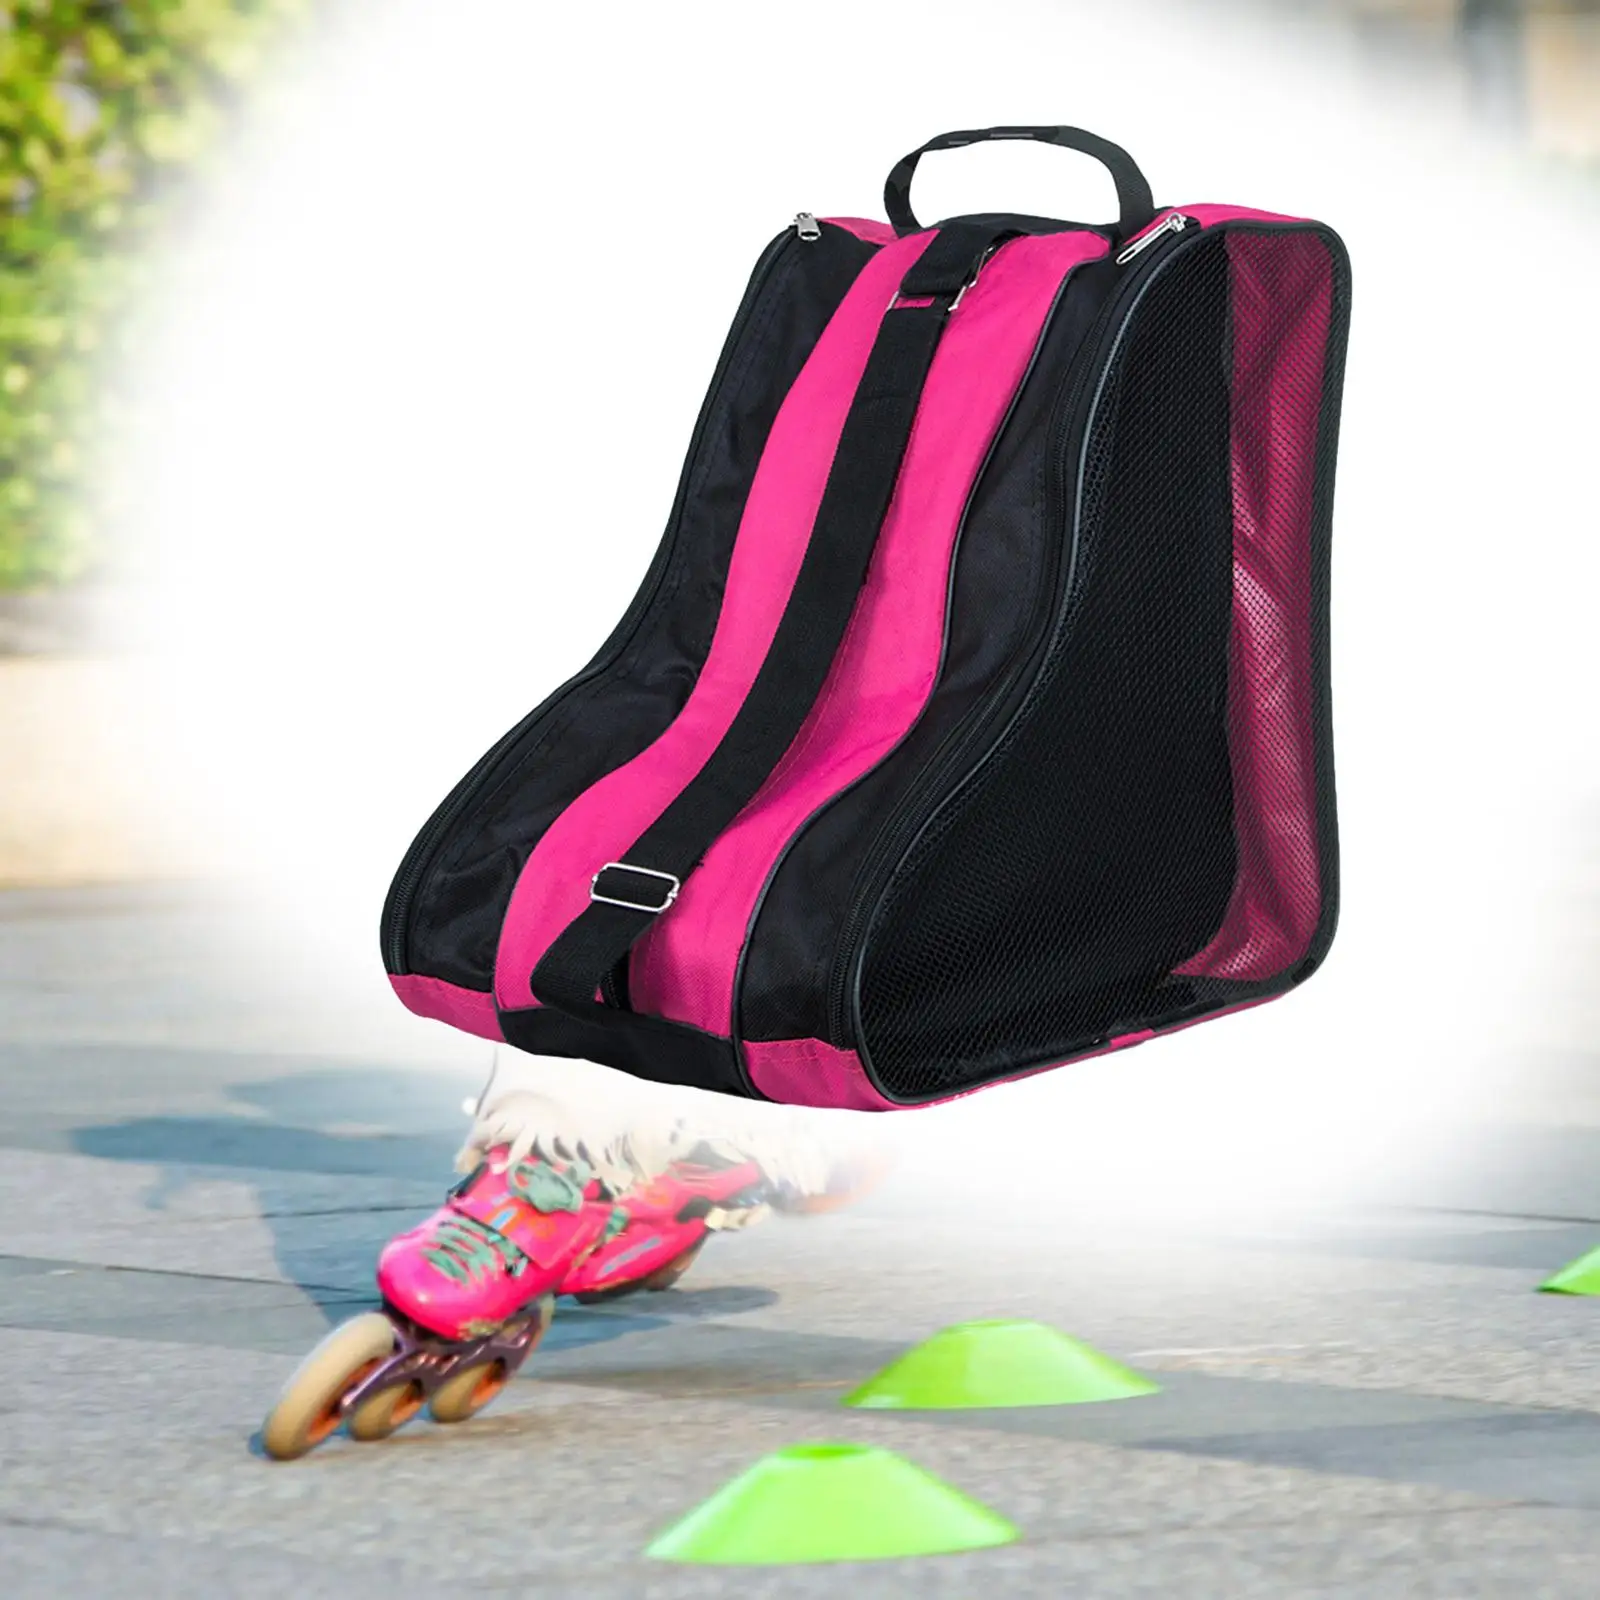 Roller Skate Bag with Shoulder Strap Roller Skate Carrier for Figure Skates